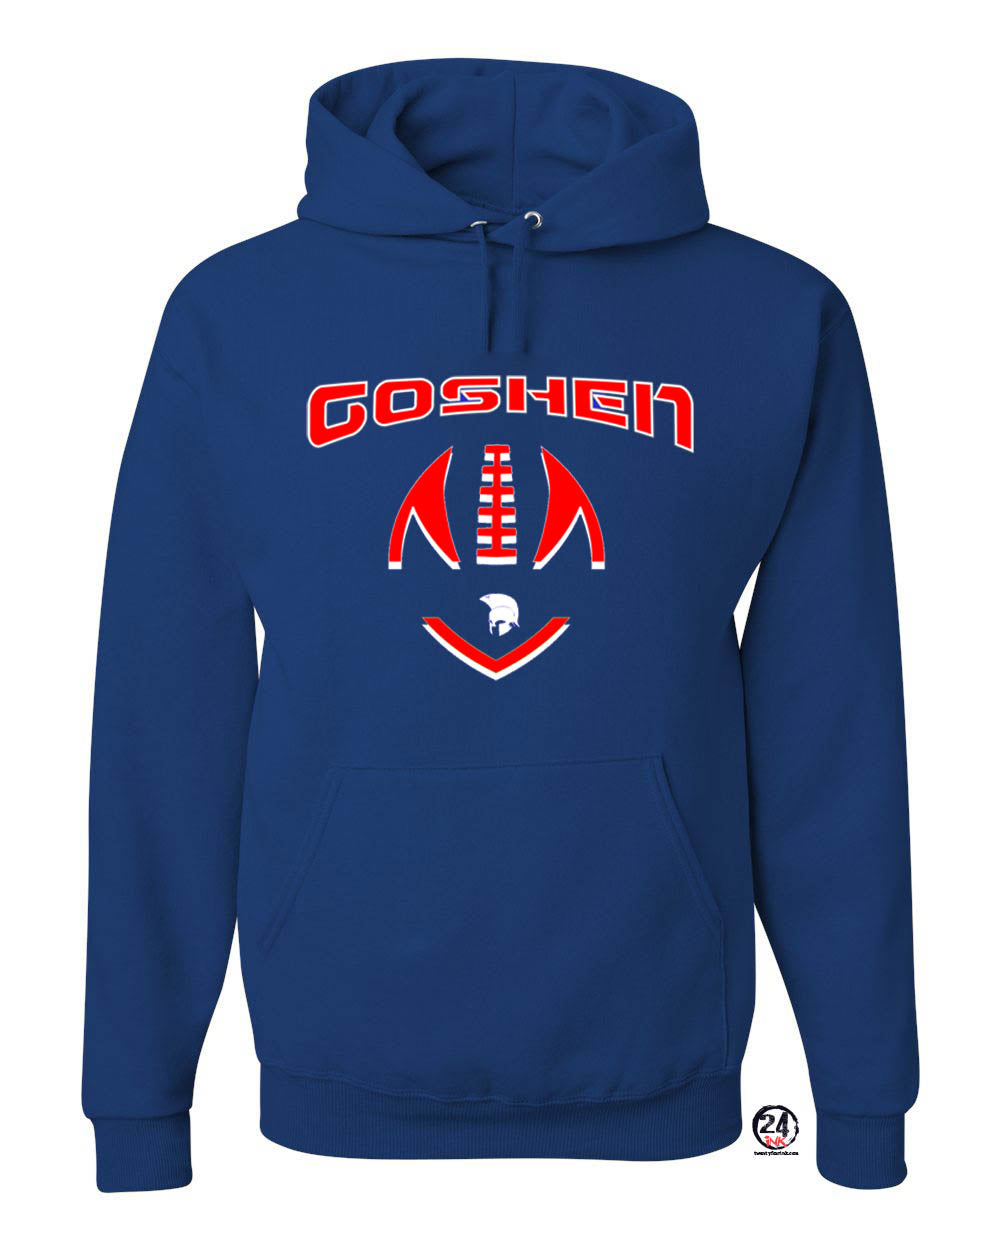 Goshen Football Hooded Sweatshirt